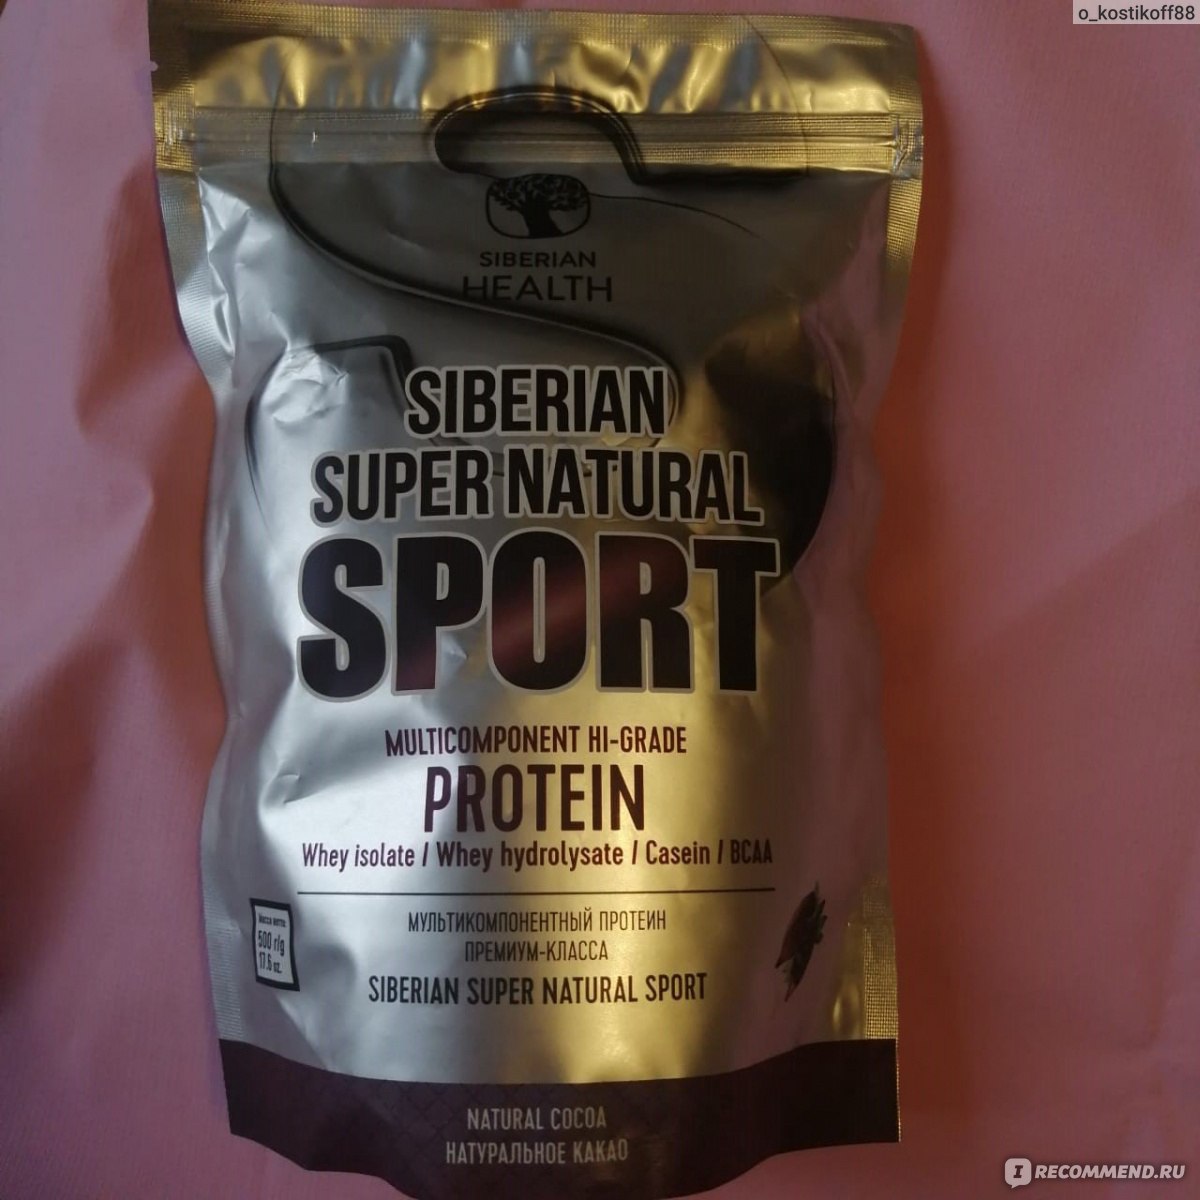 Коктейль Siberian Wellness (Сибирское здоровье) Siberian Super Natural Sport. Мультикомпонентный протеин премиум-класса фото